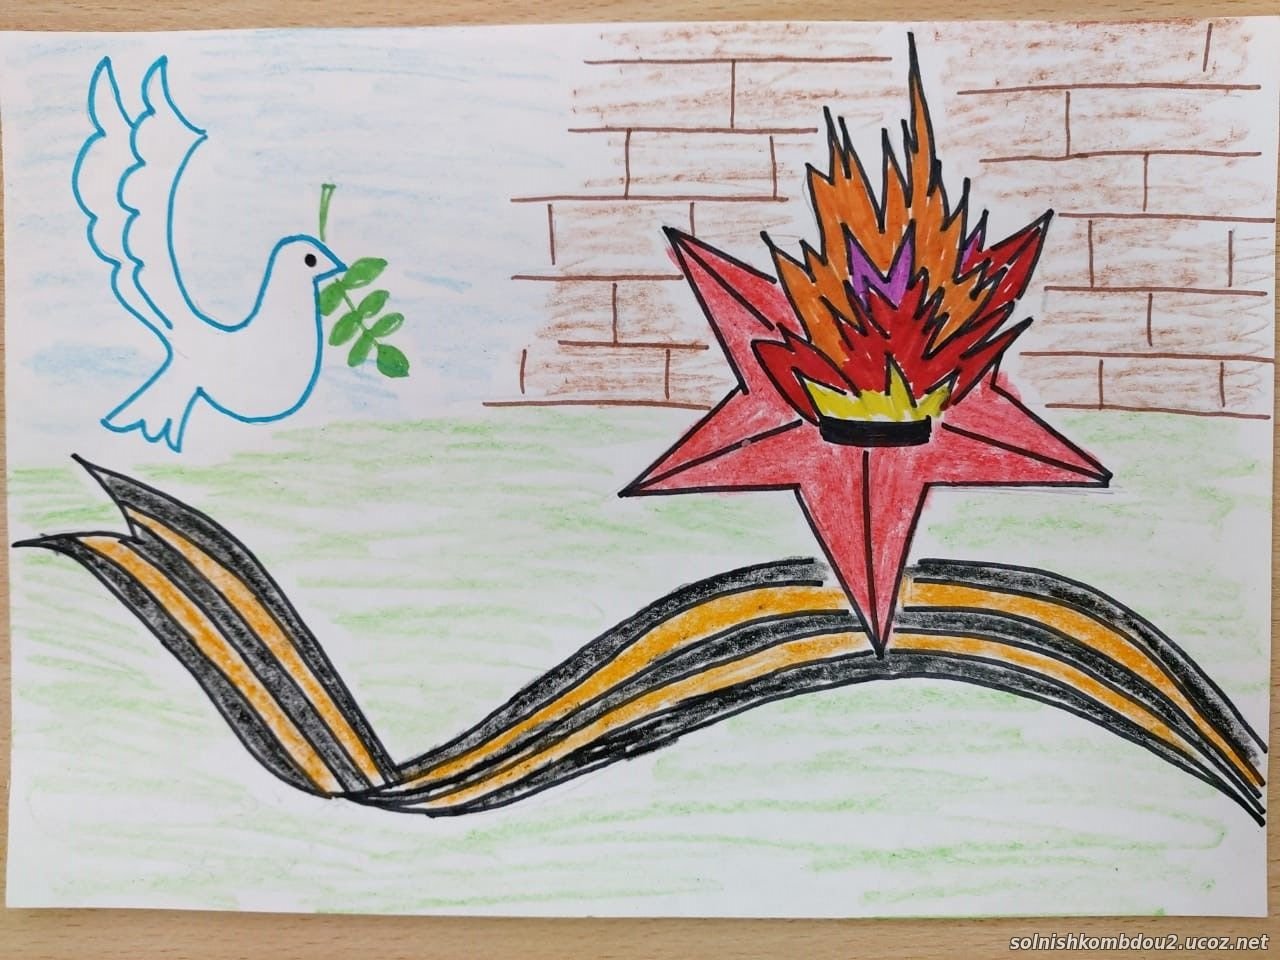 Рисунок на тему вечный огонь. Вечный огонь рисунок. Вечный огонь рисунок для детей. Рисование для детей вечный огонь. Детский рисунок на тему вечный огонь.